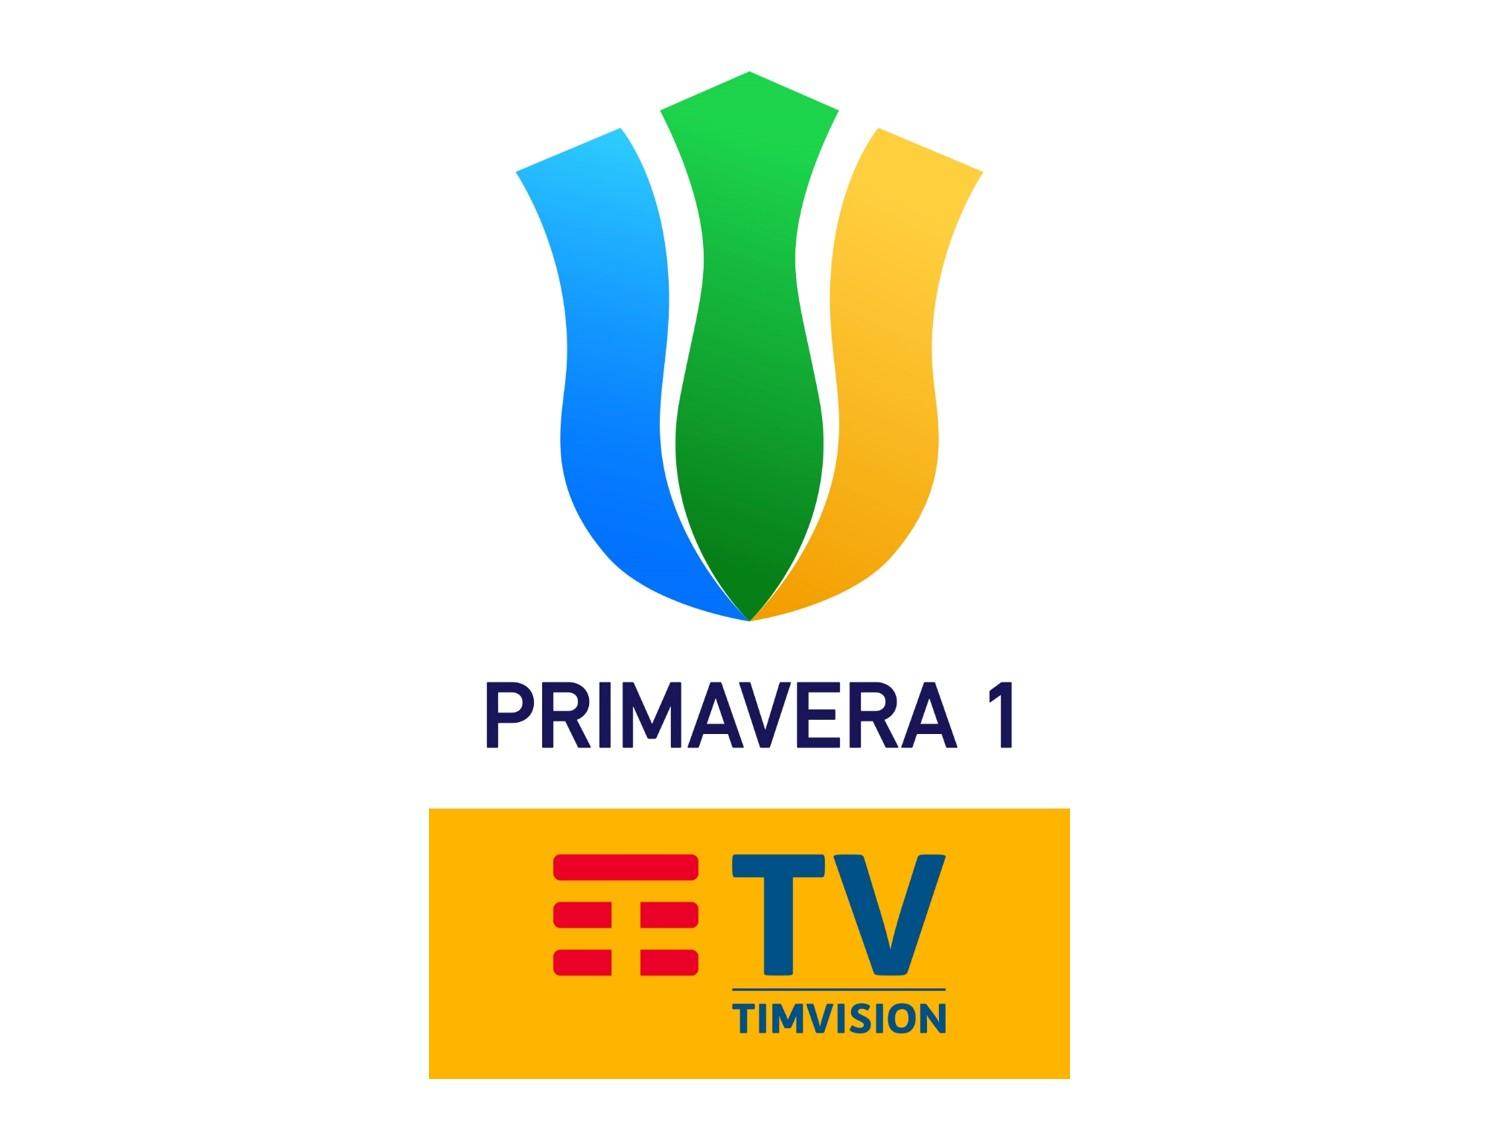 Sportitalia Campionato Primavera 1 TimVision - Programma 28a Giornata e Telecronisti